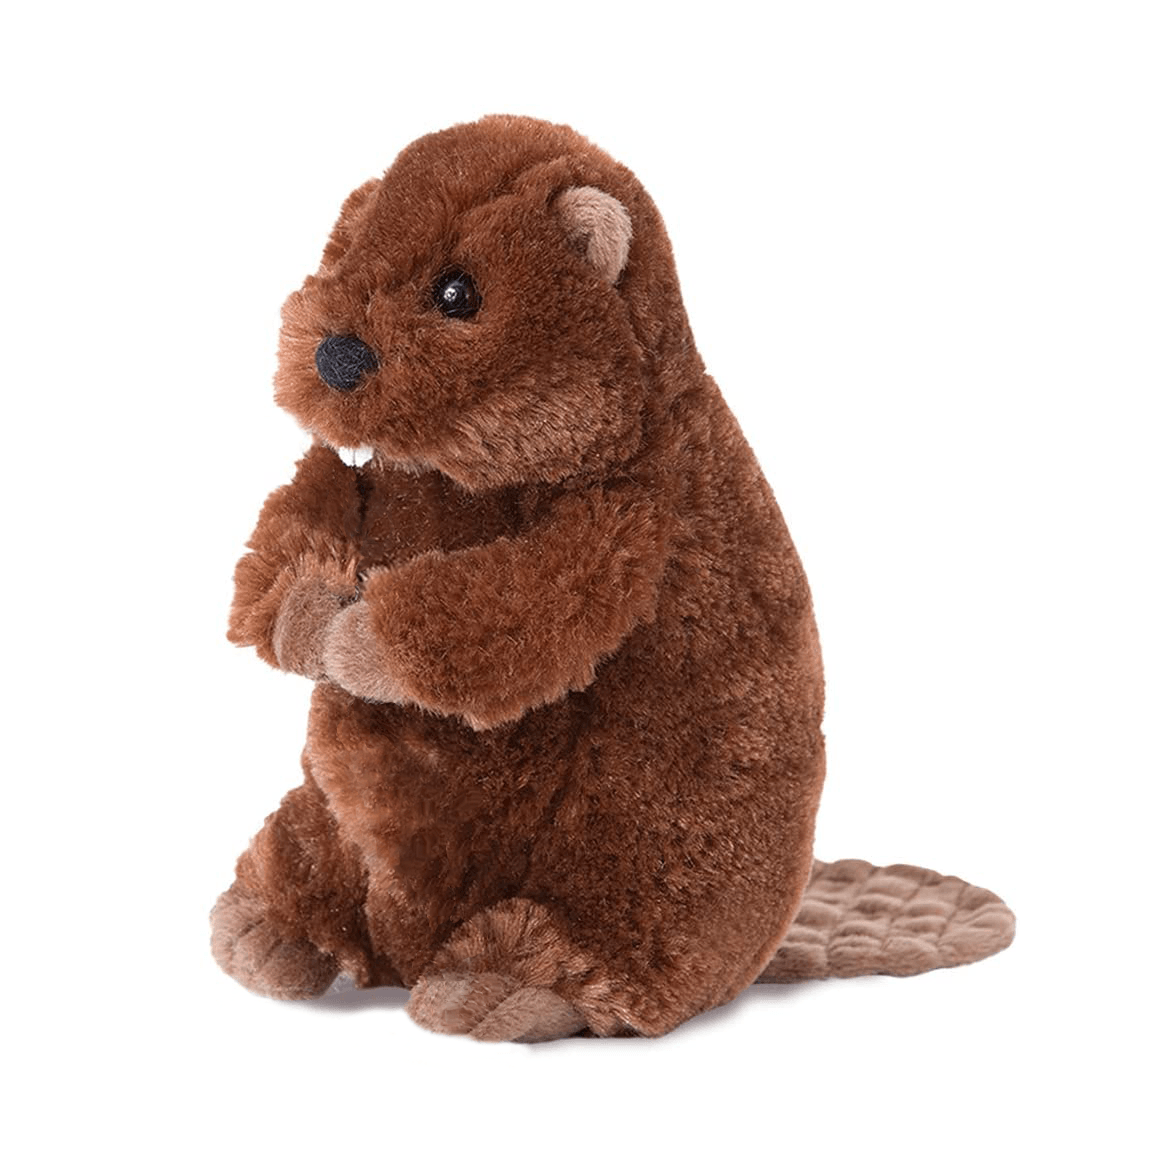 Stuffed Animal - Buddy Beaver